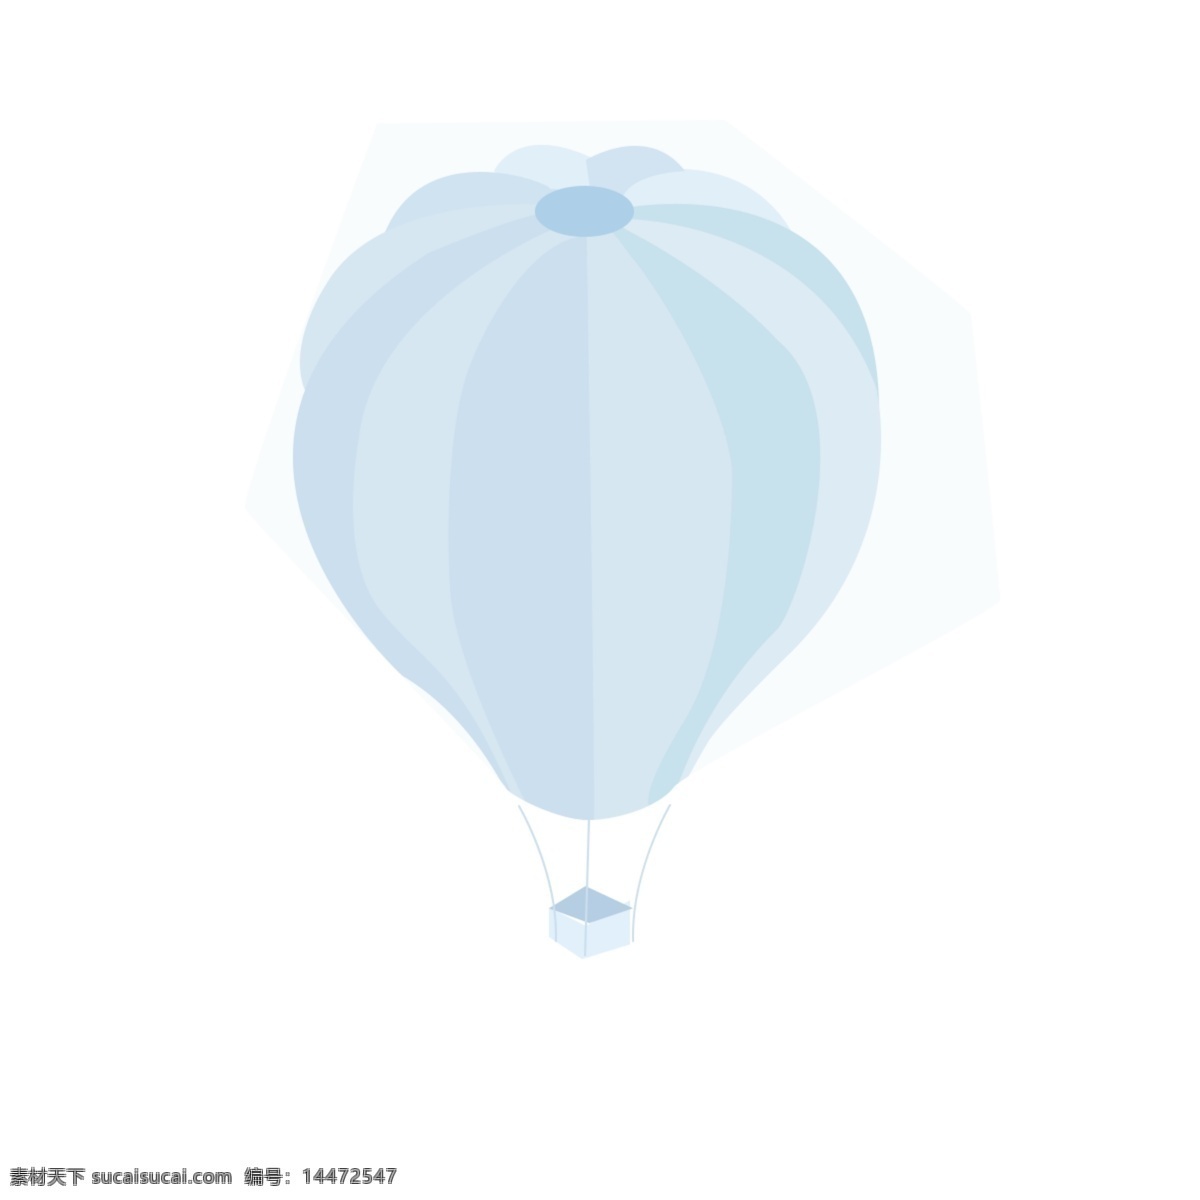 热气球 气球 飞天 矢量 氢气球 元素 小清新 浪漫土耳其 庆典元素